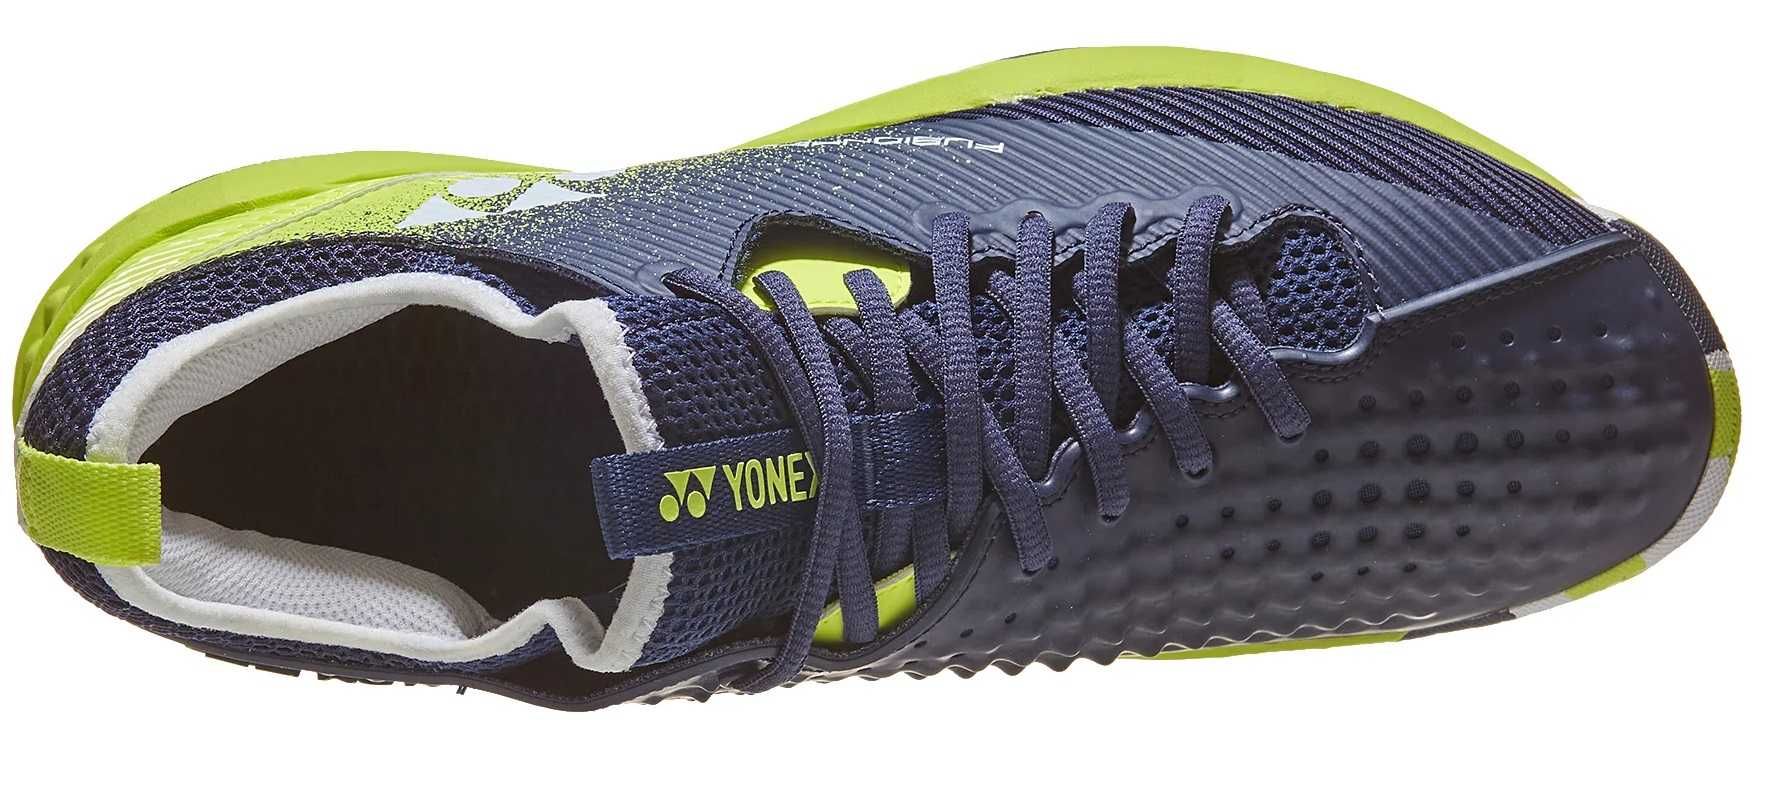 Buty tenisowe męskie YONEX FUSIONREV 4 AC r. 44